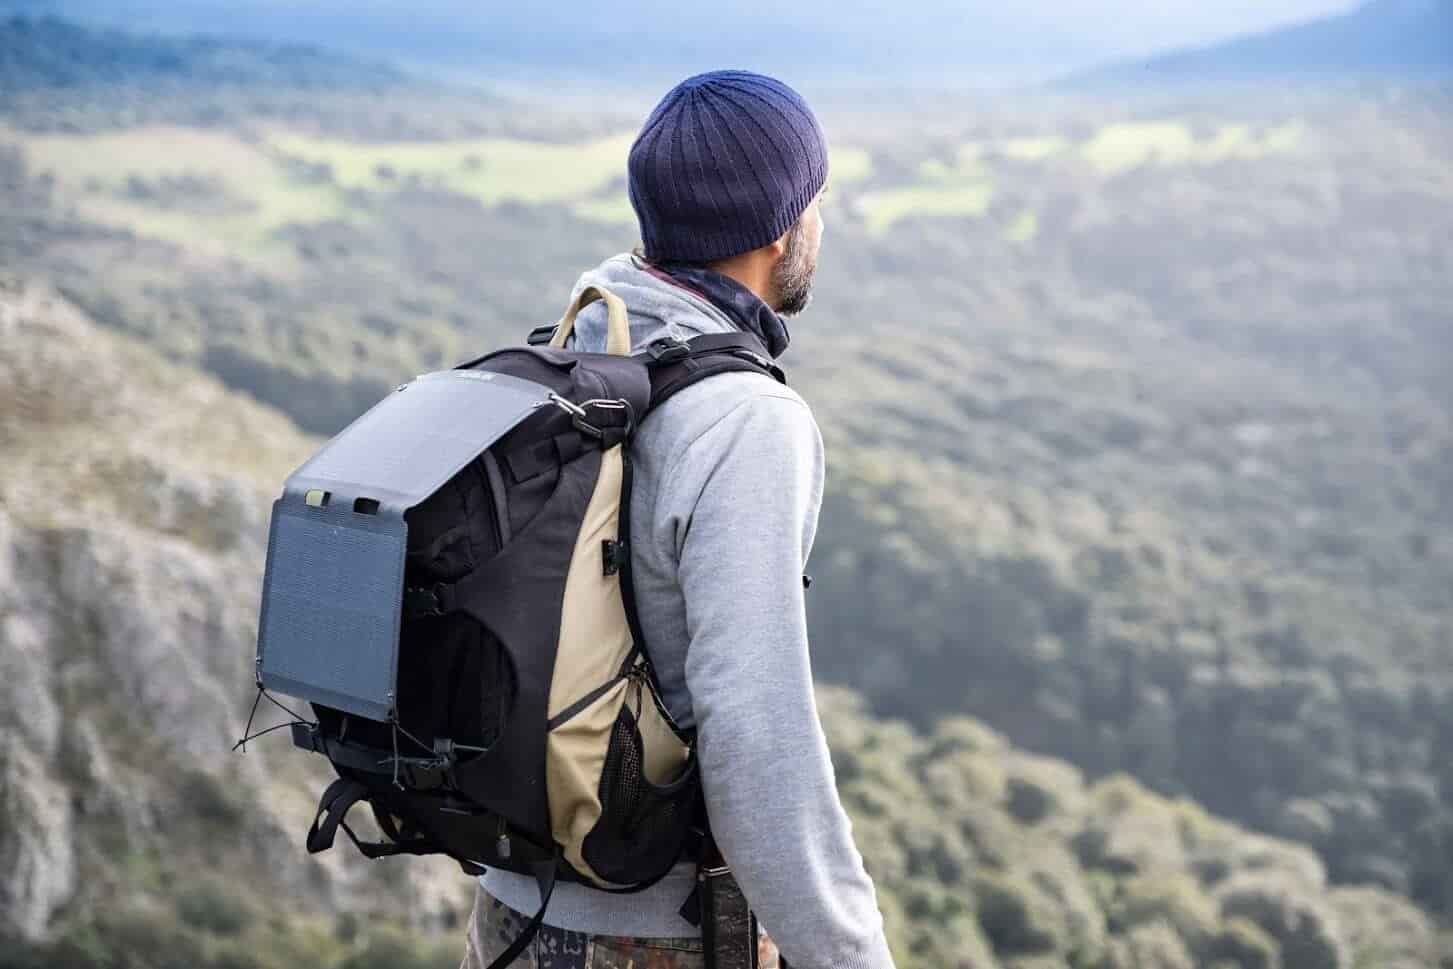 homme au sommet d'une montagne avec le meilleur panneau solaire portable attaché à son sac à dos de randonnée